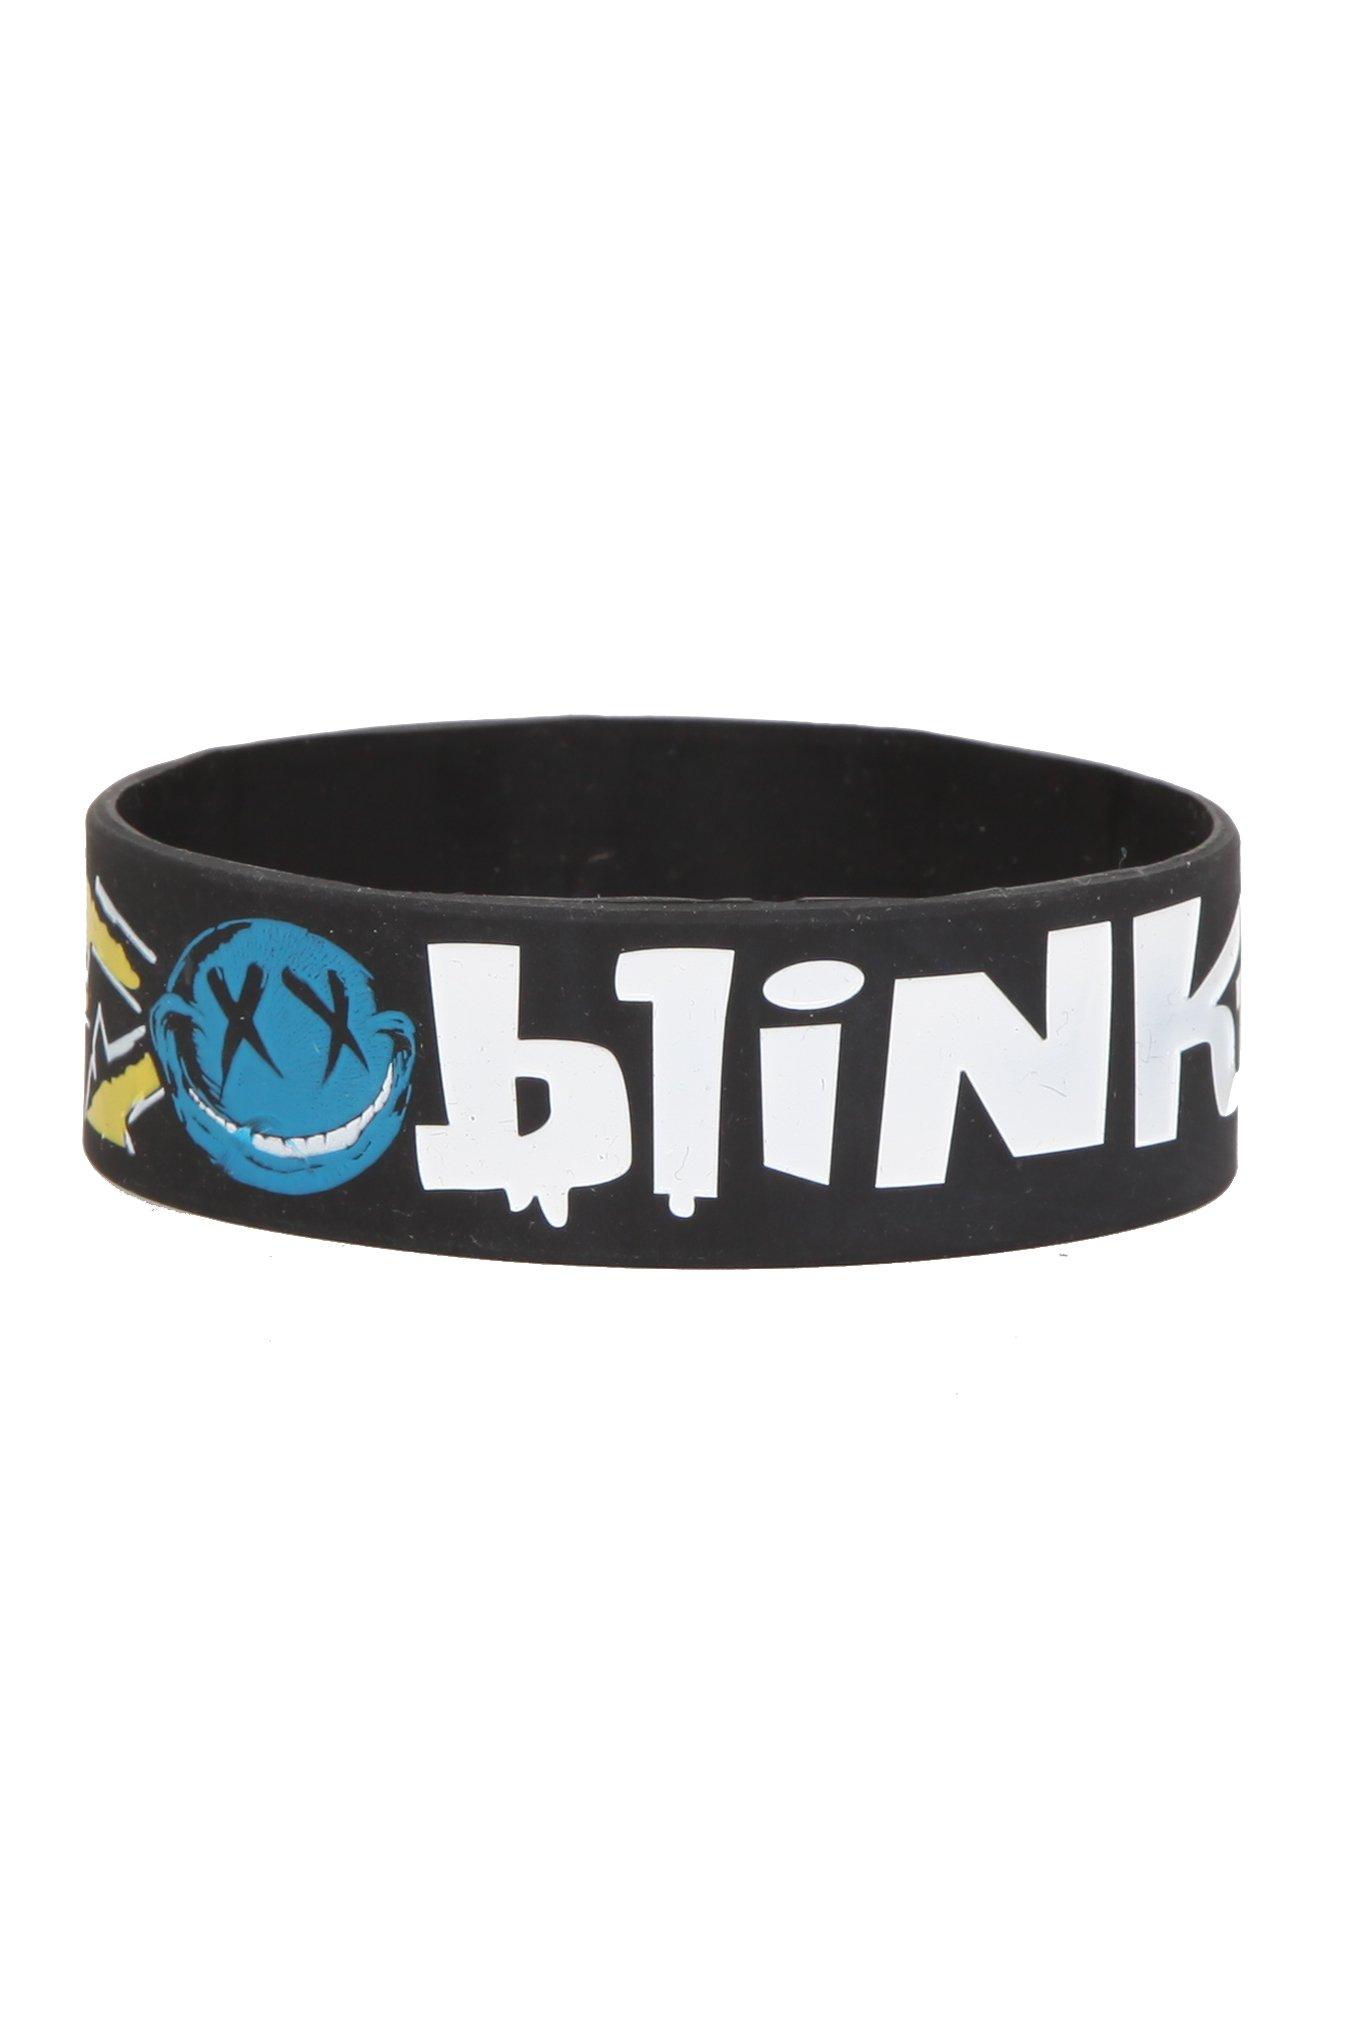 Blink-182 Smiley Rubber Bracelet, , hi-res